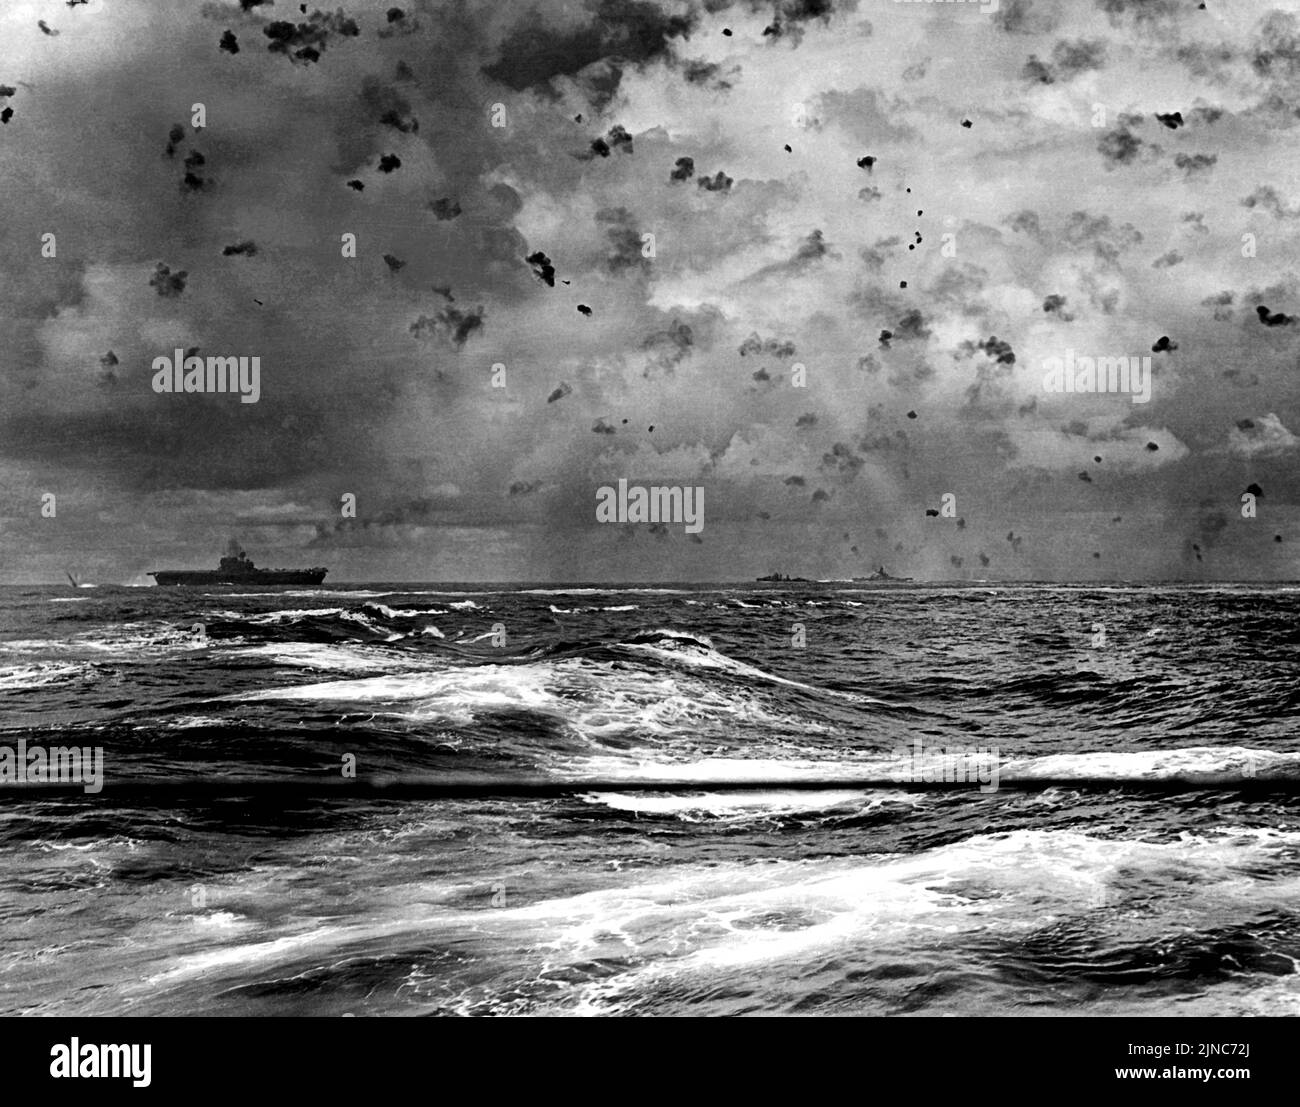 In einem dramatischen Actionfoto der US Navy Flugzeugträger USS Enterprise (CV-6) und andere Schiffe ihrer Leinwand in Aktion während der Schlacht von Santa Cruz, 26. Oktober 1942. Eine Bombe explodiert von ihrem Heck, während zwei japanische Tauchbomber direkt über dem Träger und in Richtung Bildmitte zu sehen sind. Stockfoto